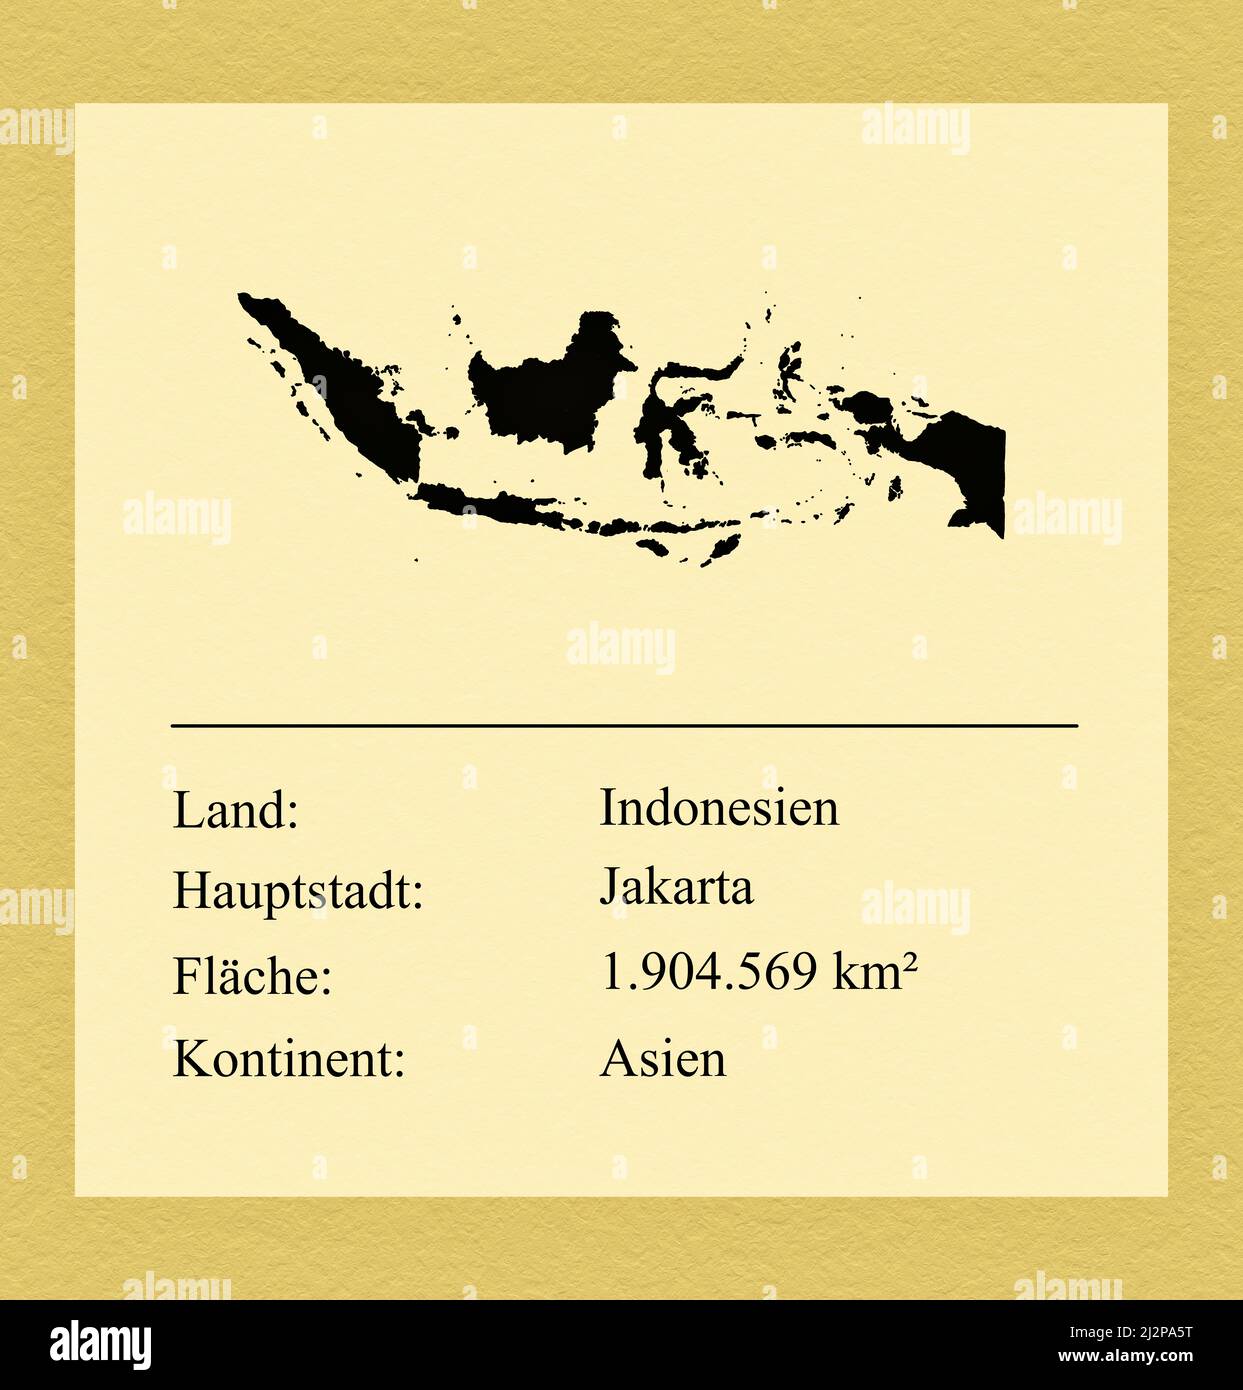 Umrisse des Landes Indonesien, darunter ein kleiner Steckbrief mit Ländernamen, Hauptstadt, Fläche und Kontinent Foto de stock